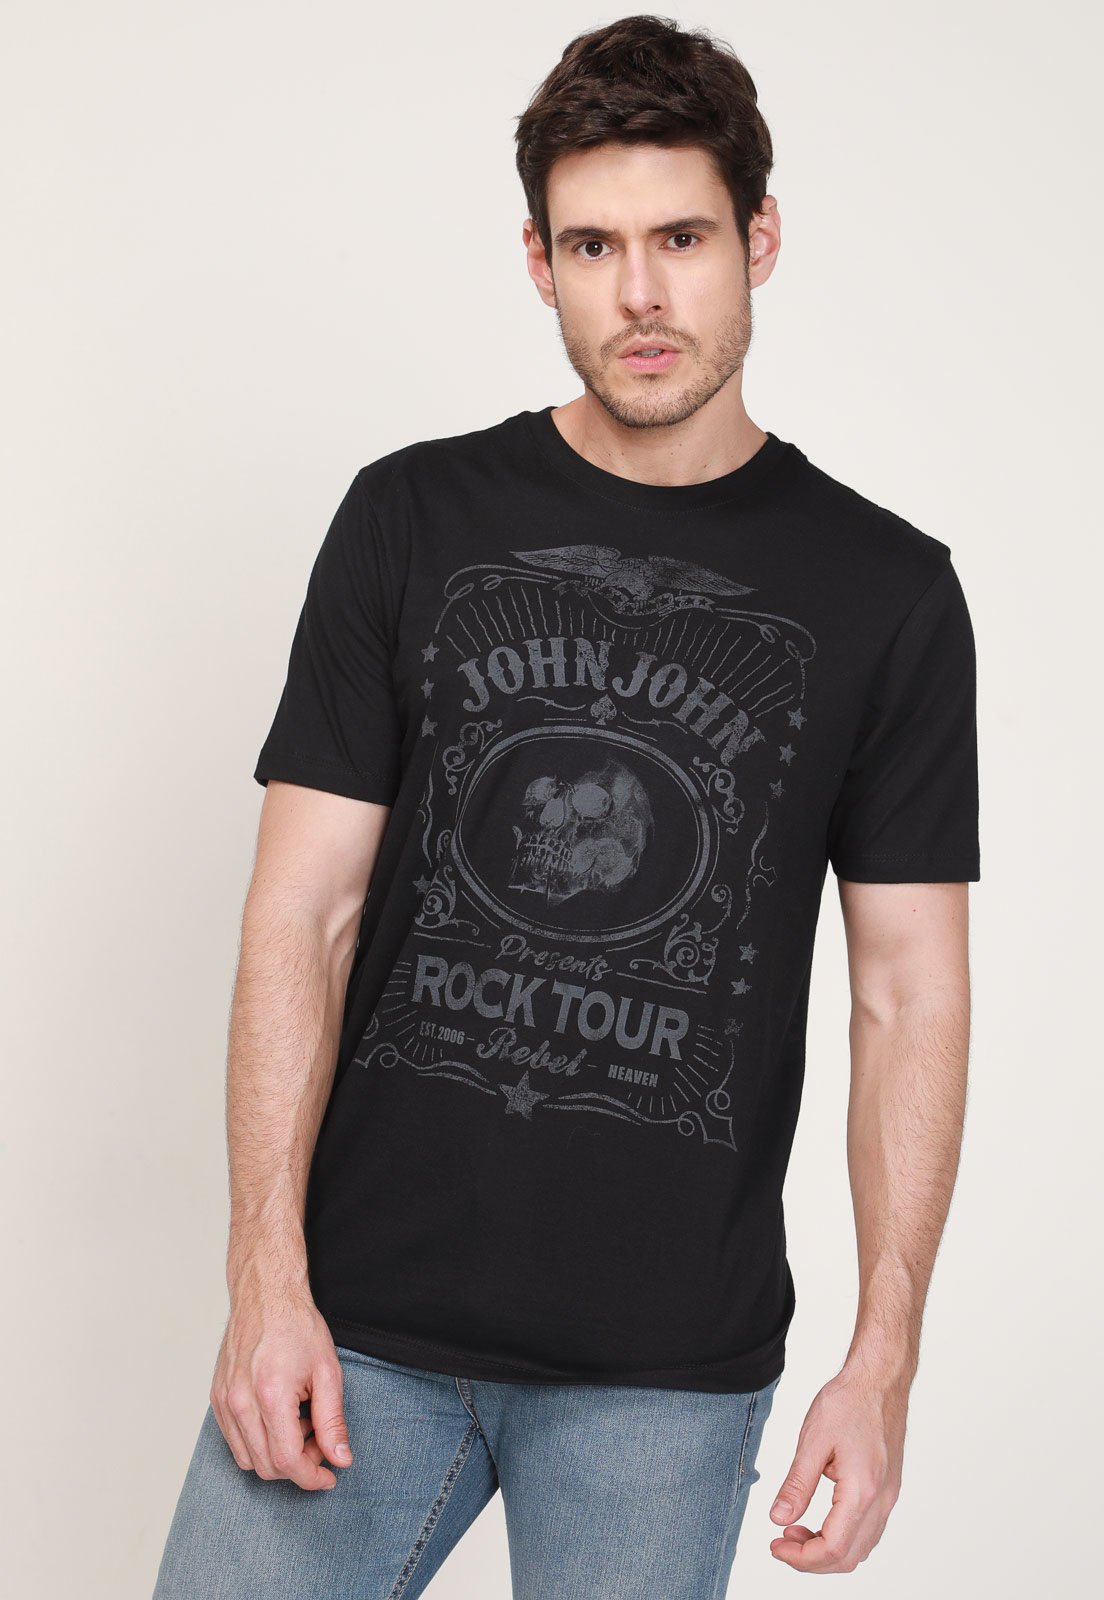 Camiseta John John Rock Preta - Faz a Boa!